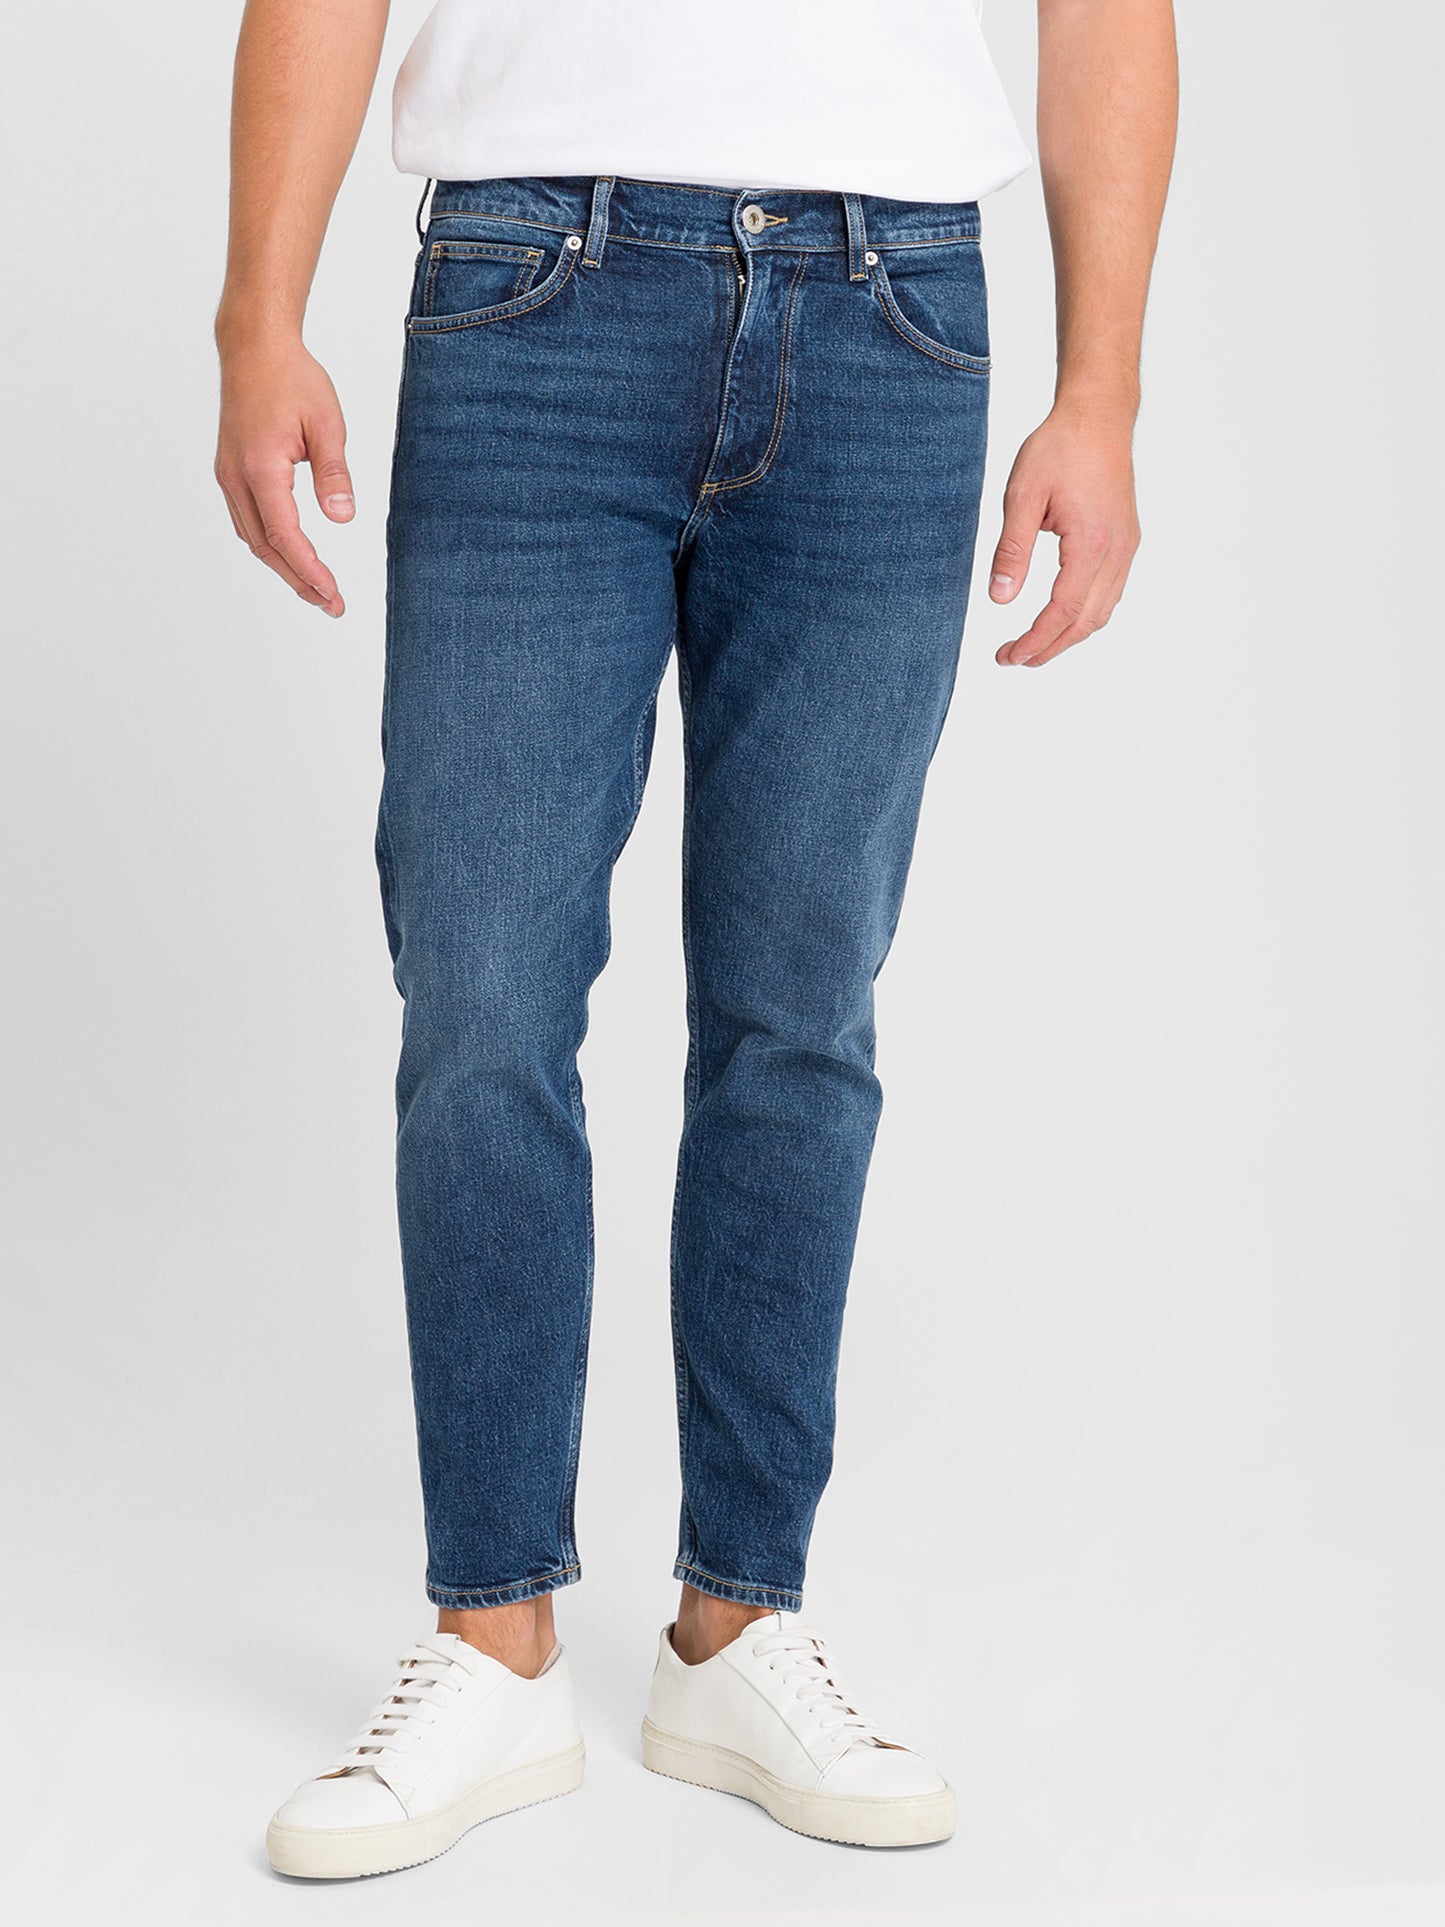 Finn Herren Jeans Regular Fit Tapered Leg dunkelblau